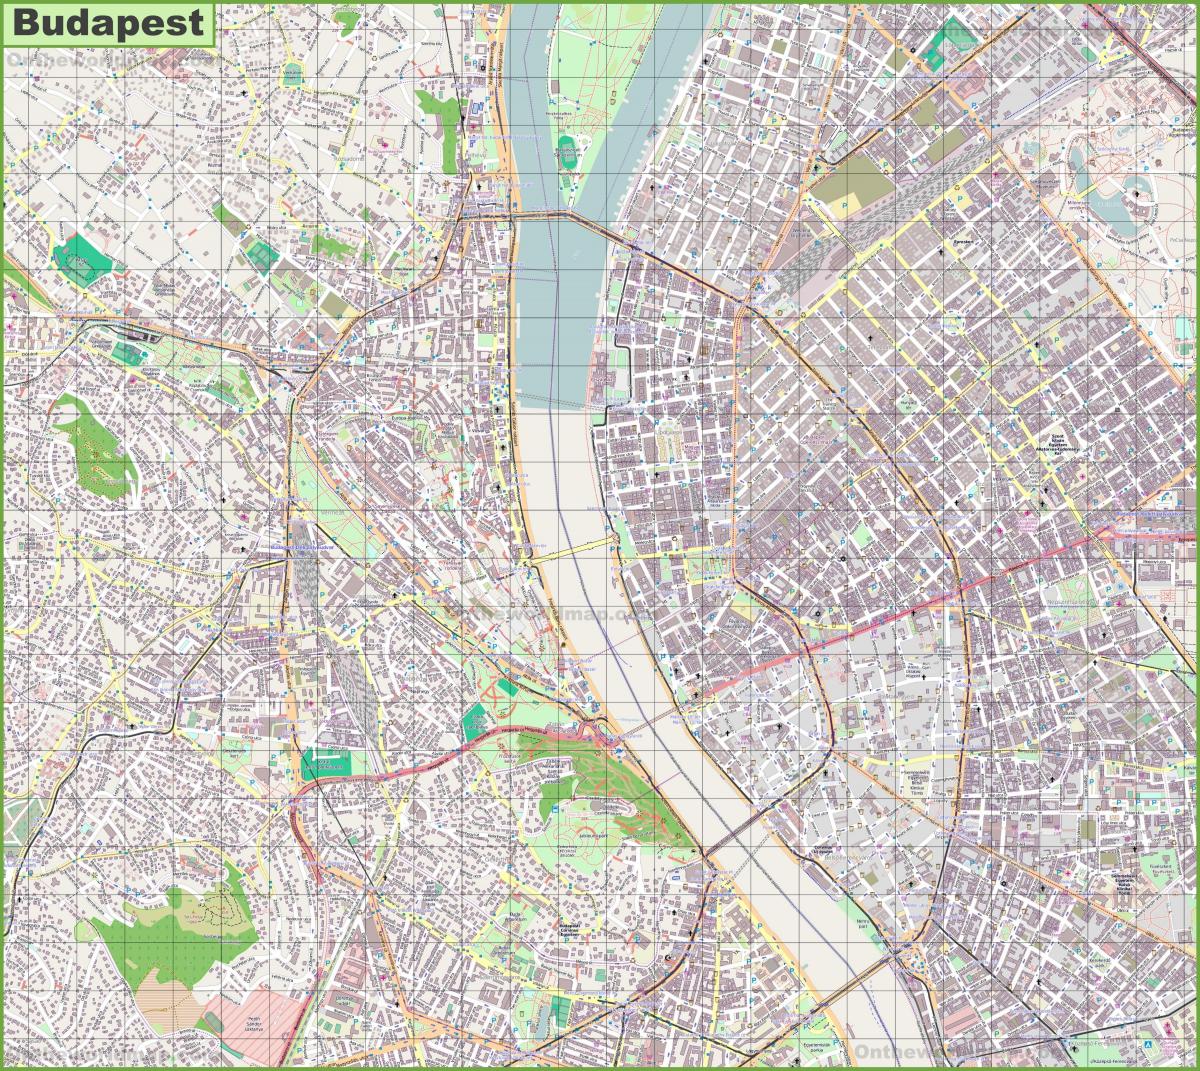 ブダペストの街並みマップ